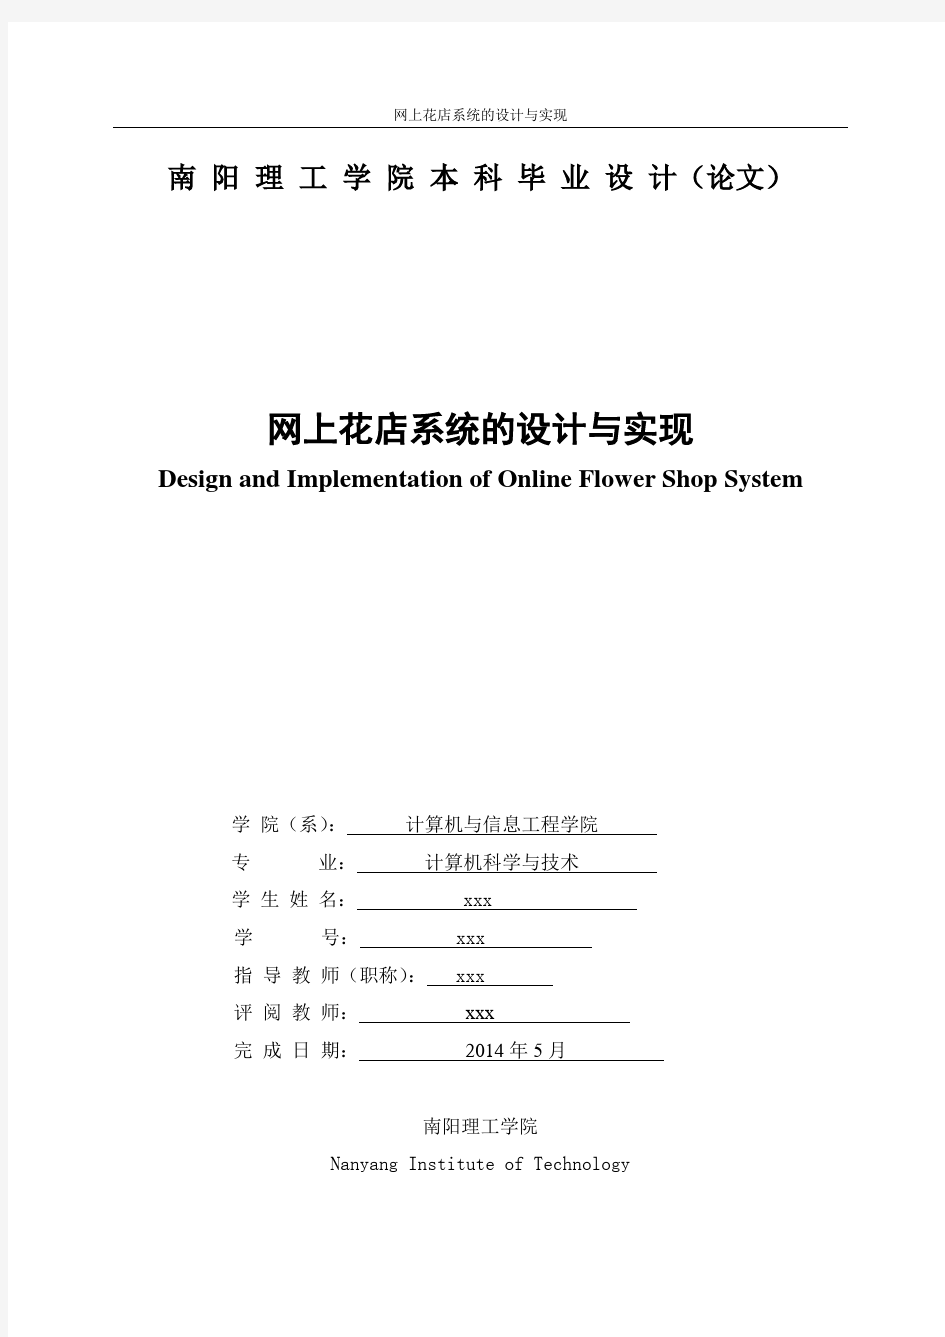 网上花店系统的设计与实现 中文+英文 最新2015年